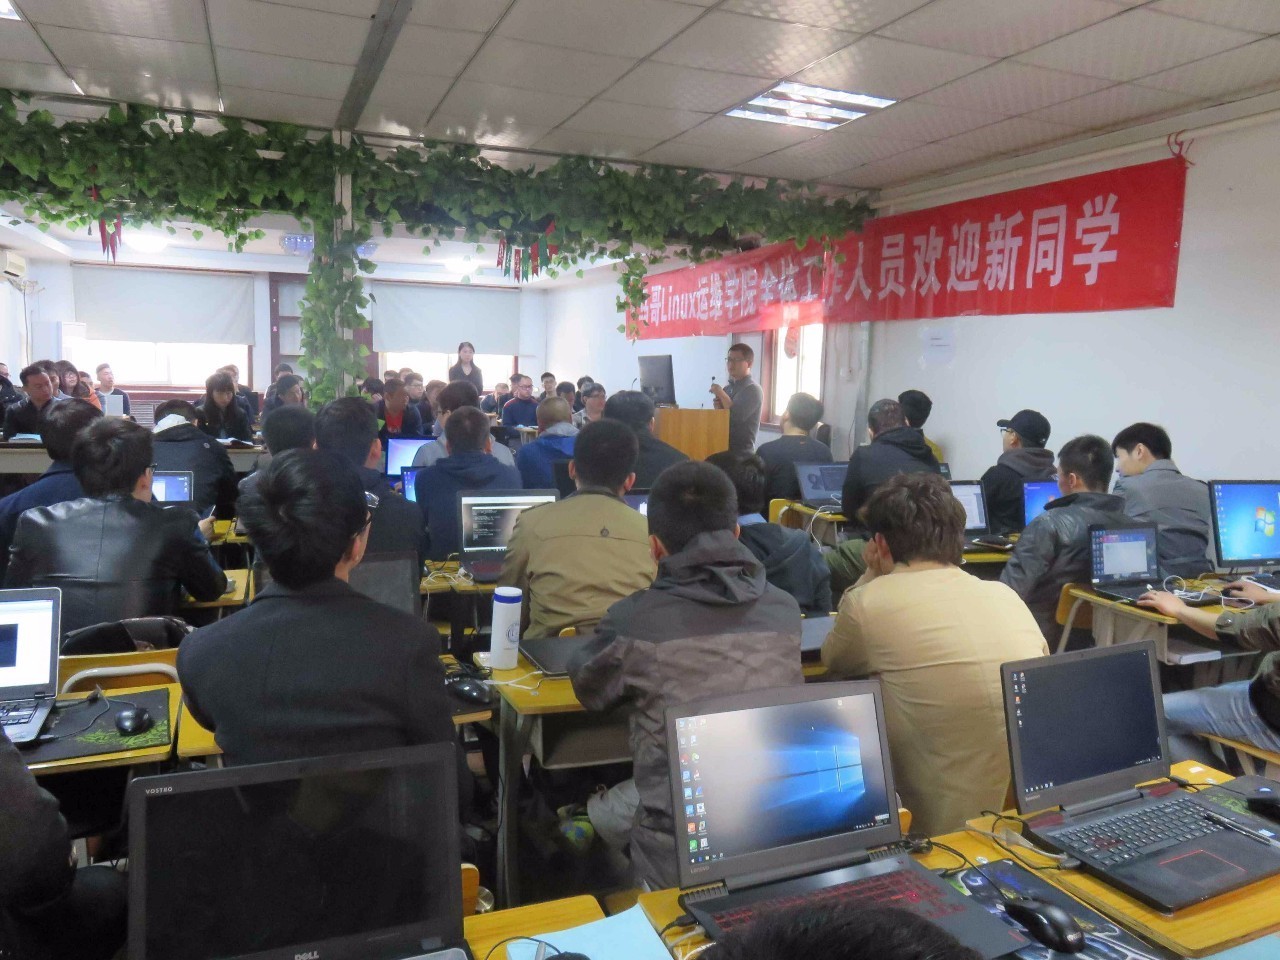 马哥教育Linux面授班23期开班典礼